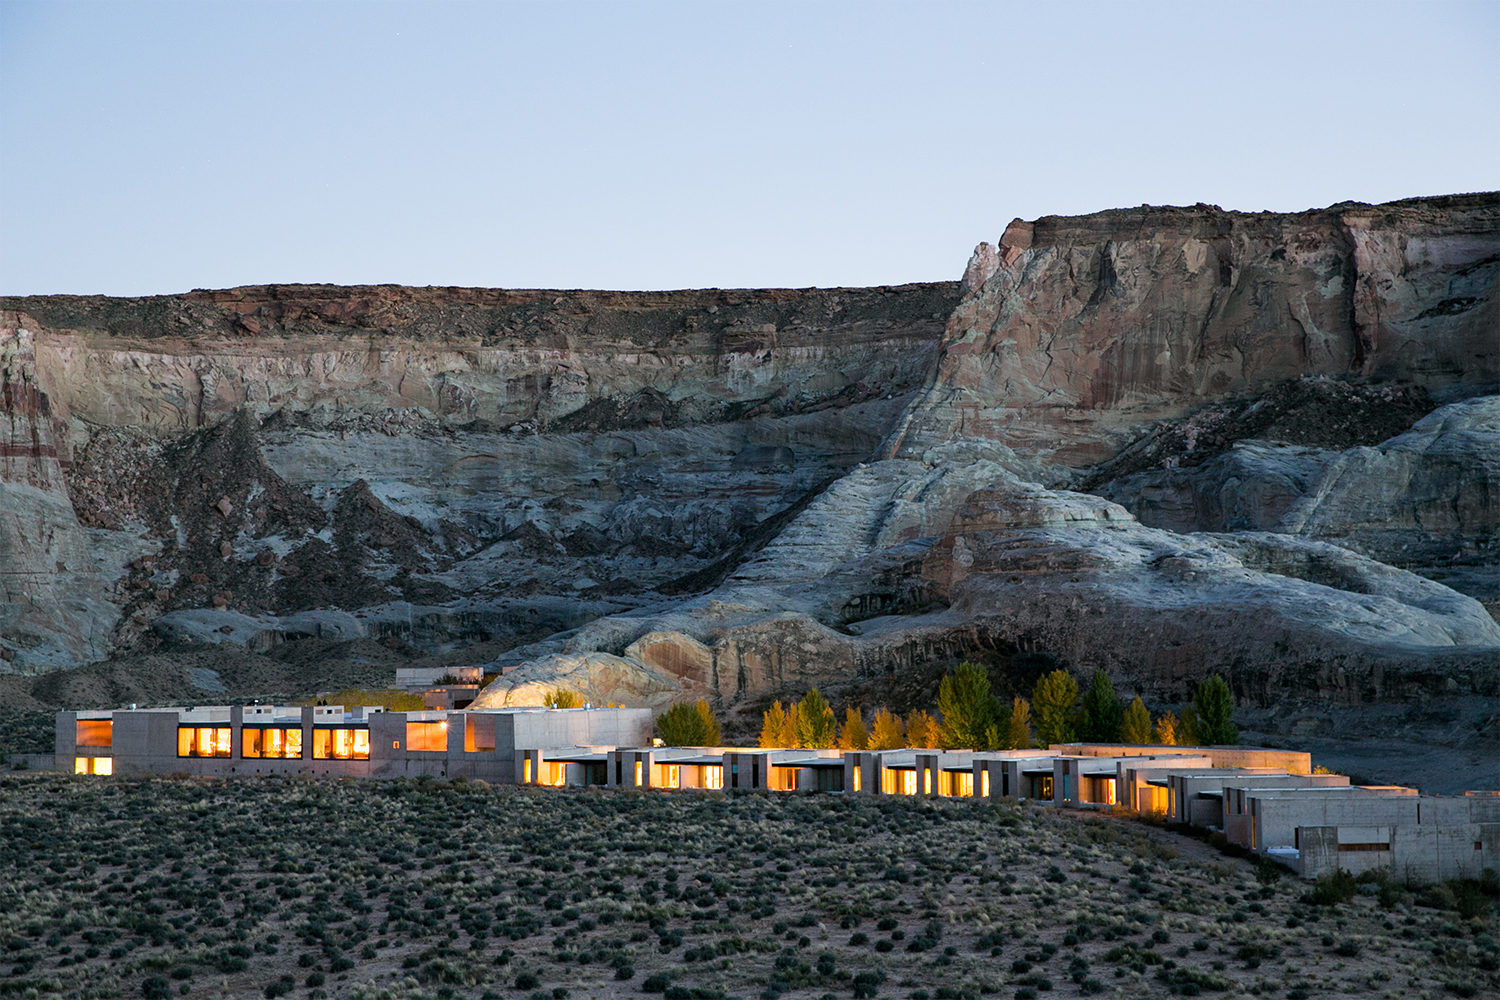 The Amangiri resort in Utah